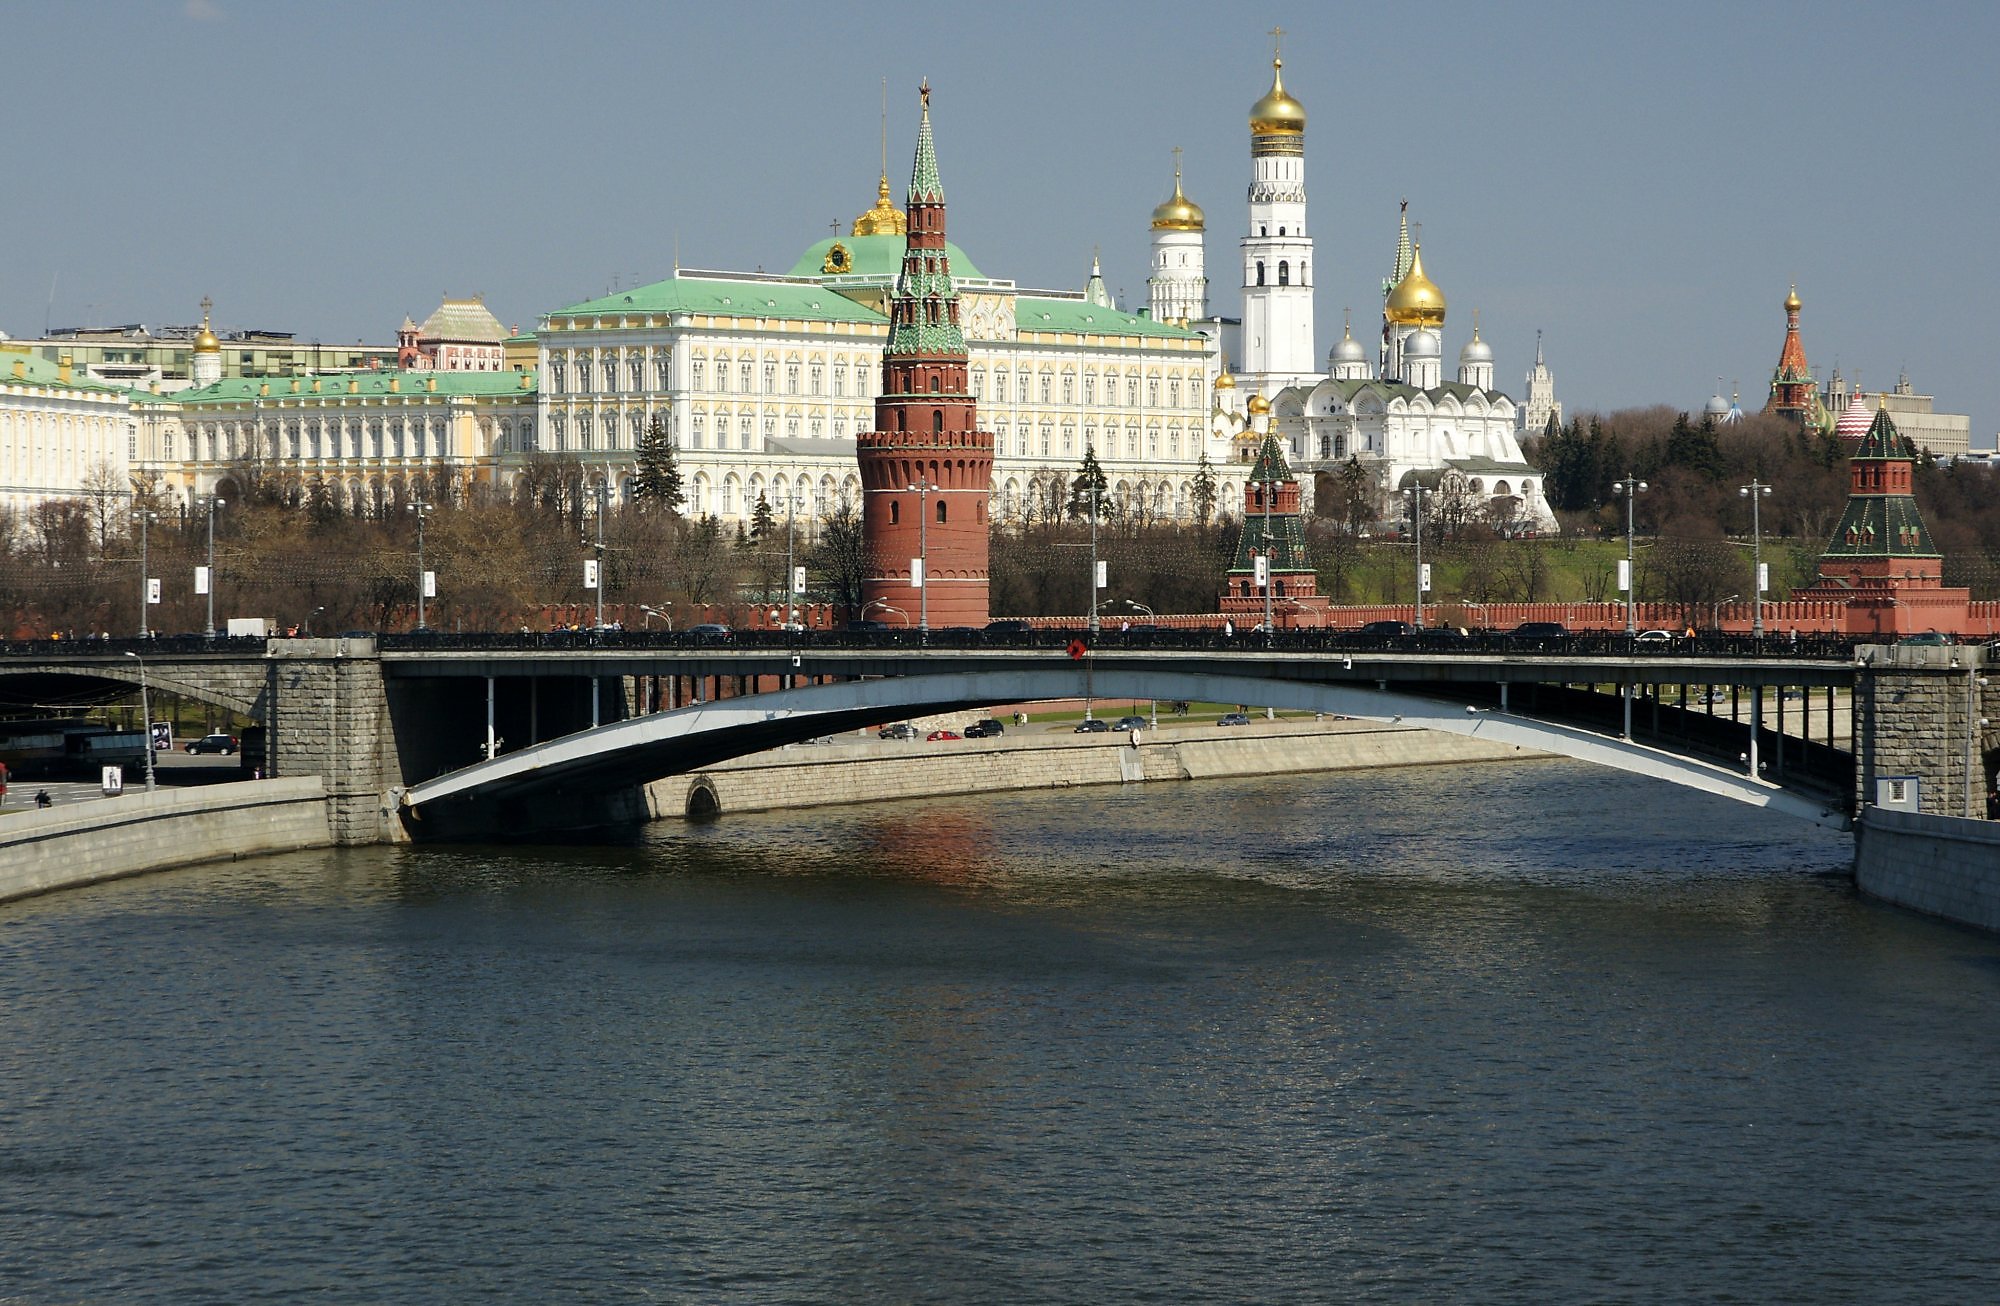 Реки у московского кремля